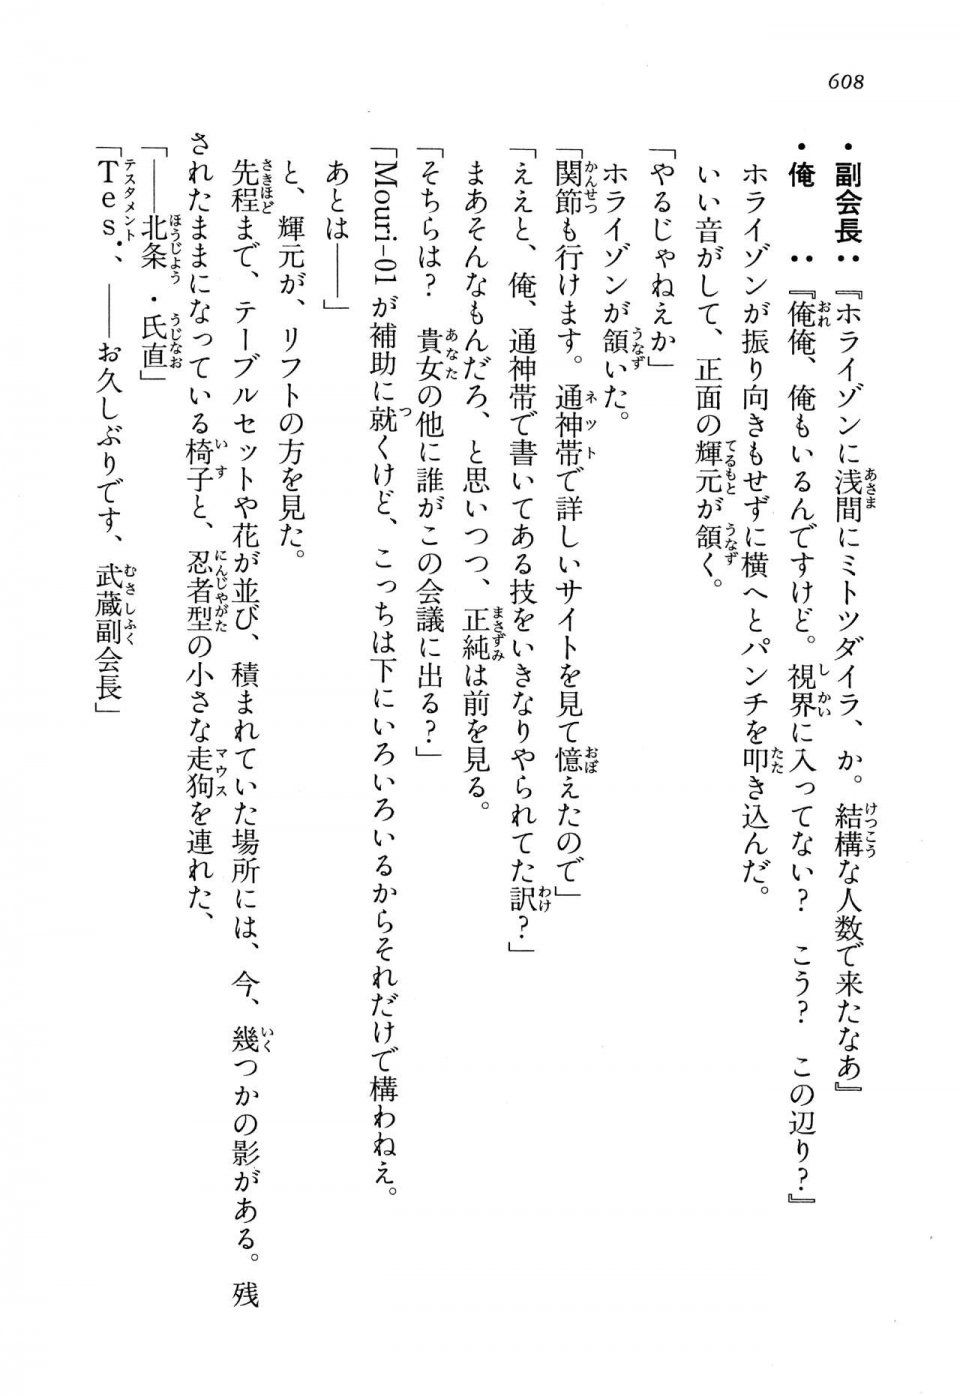 Kyoukai Senjou no Horizon LN Vol 13(6A) - Photo #608